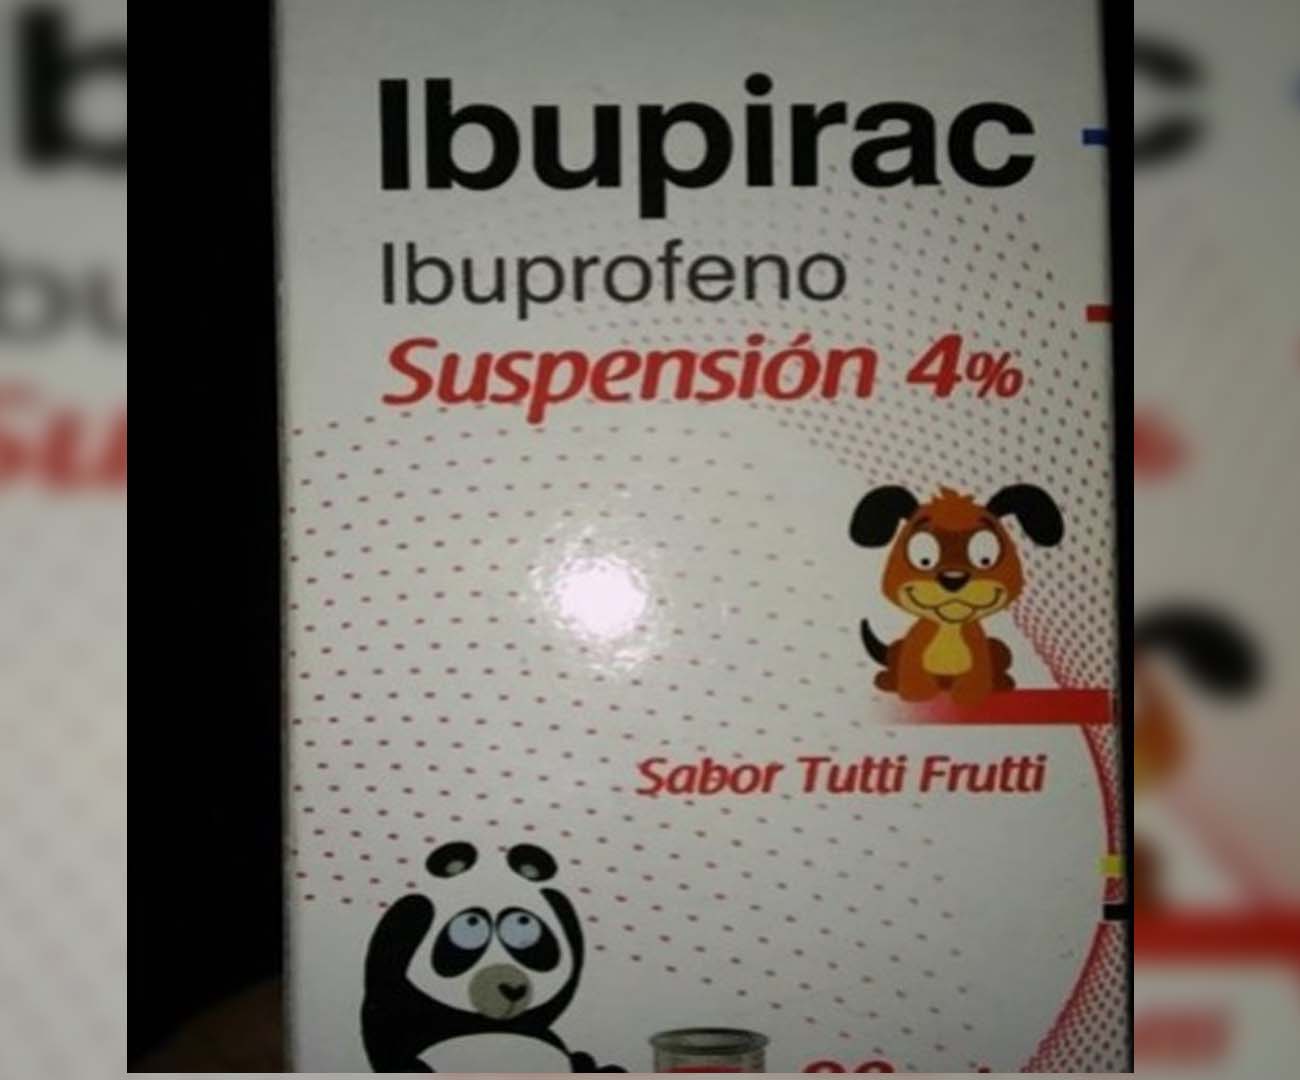 Retiran del mercado un lote de Ibupirac para niños